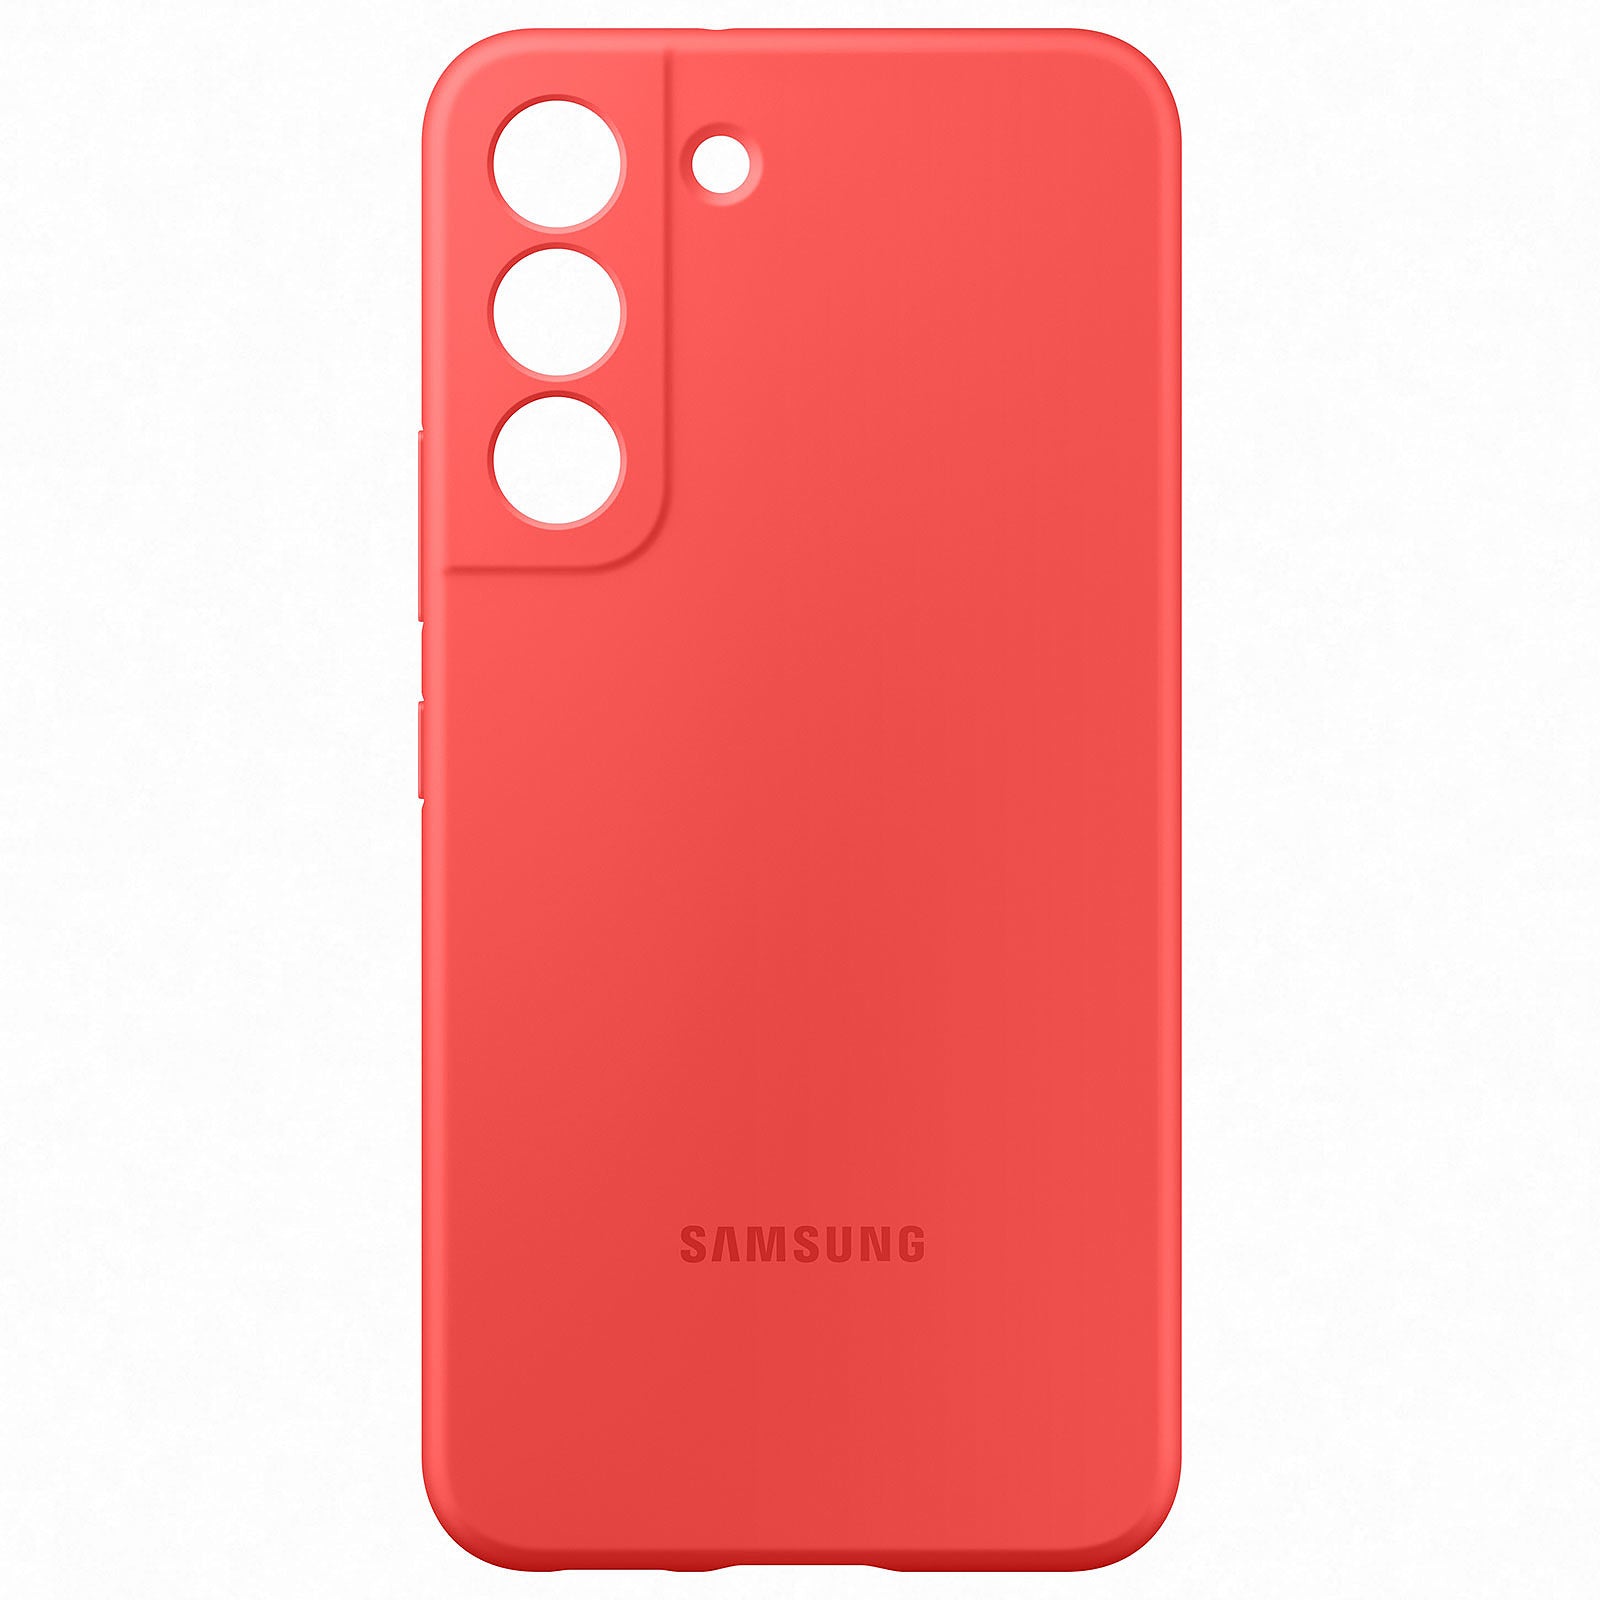 Samsung Galaxy Silicone Cover S22+